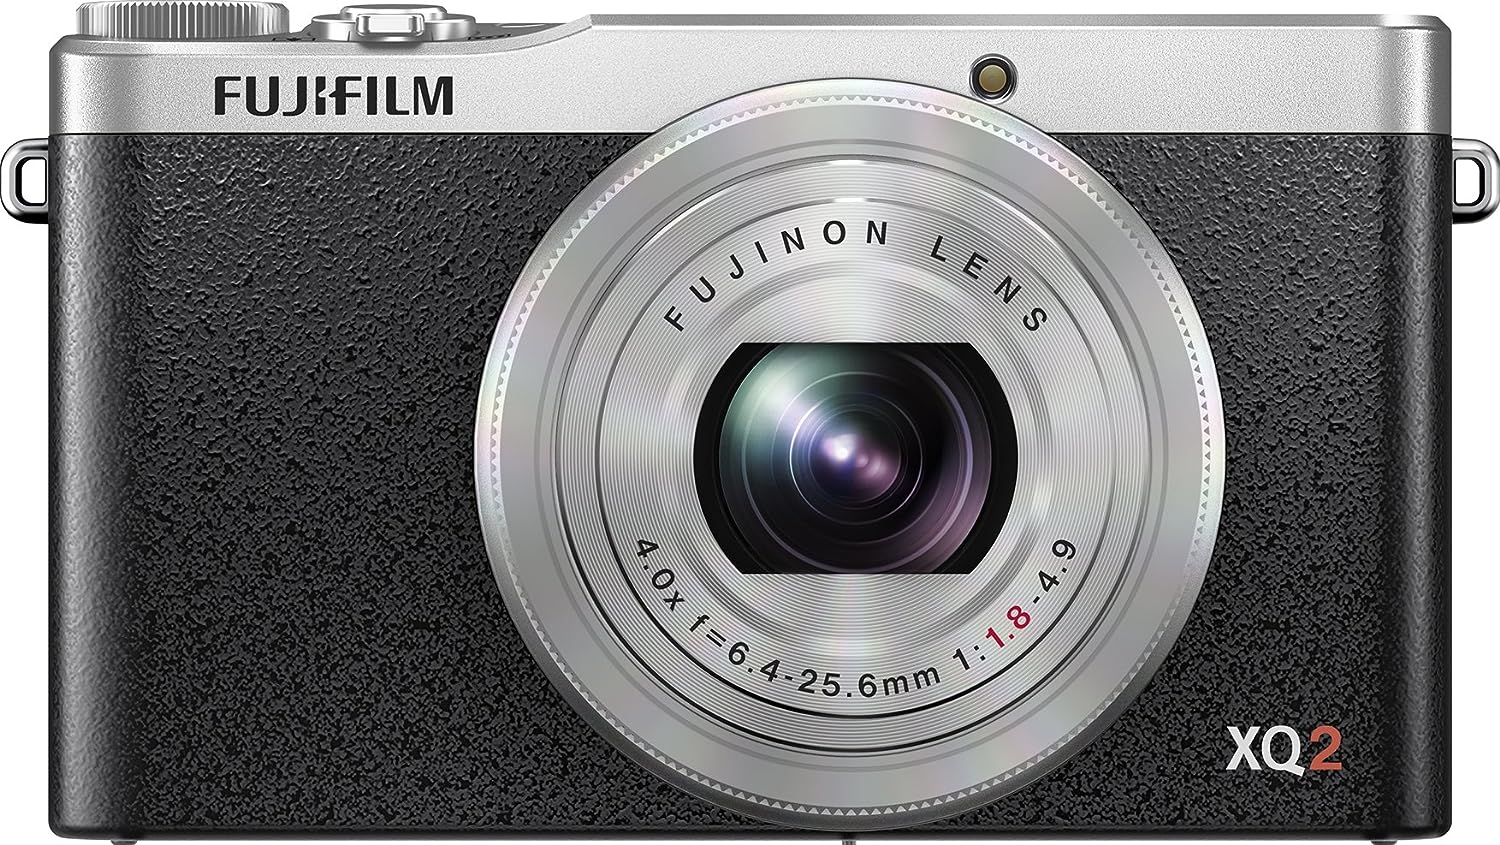 Fujifilm XQ2 Prices Are Rising - Fuji Addict